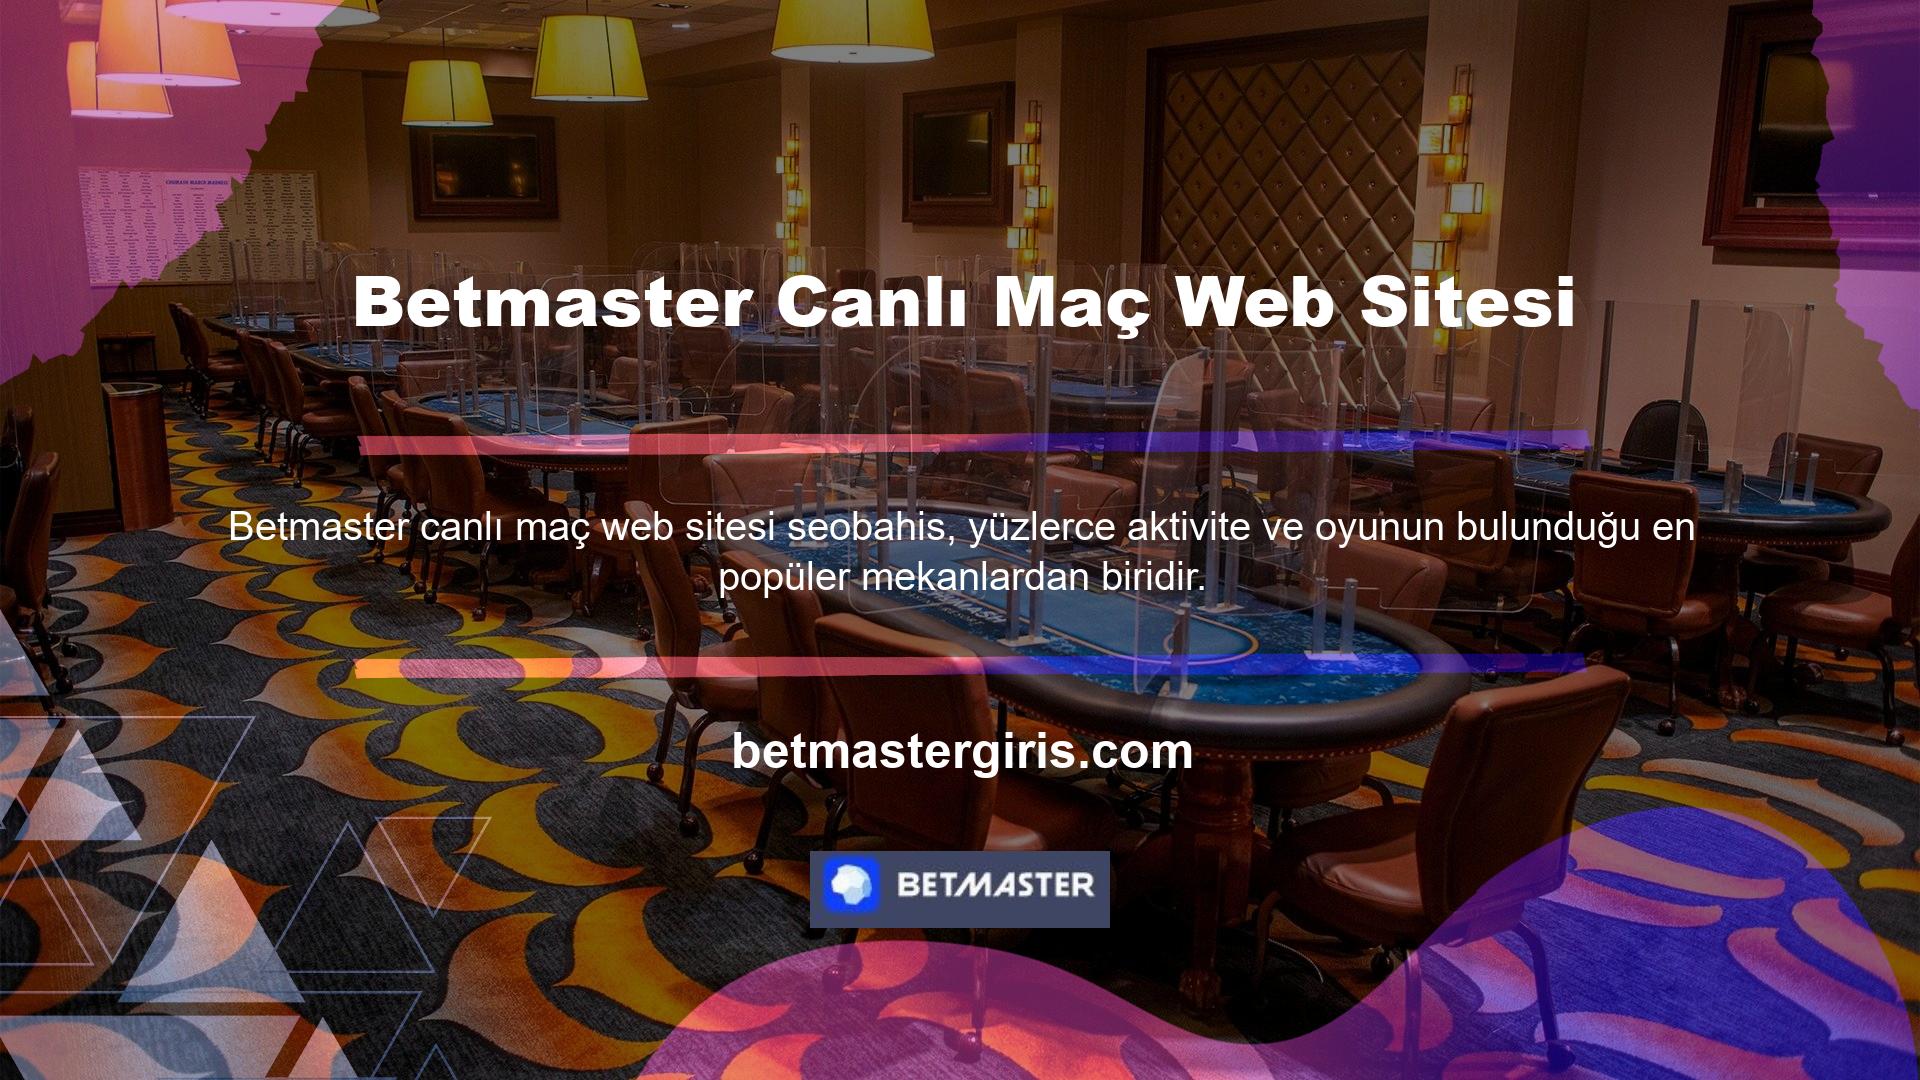 Betmaster canlı maç sitesi de maçları Canlı Maç İzle'den izlemekten keyif alan kişilerin ilgisini çekti